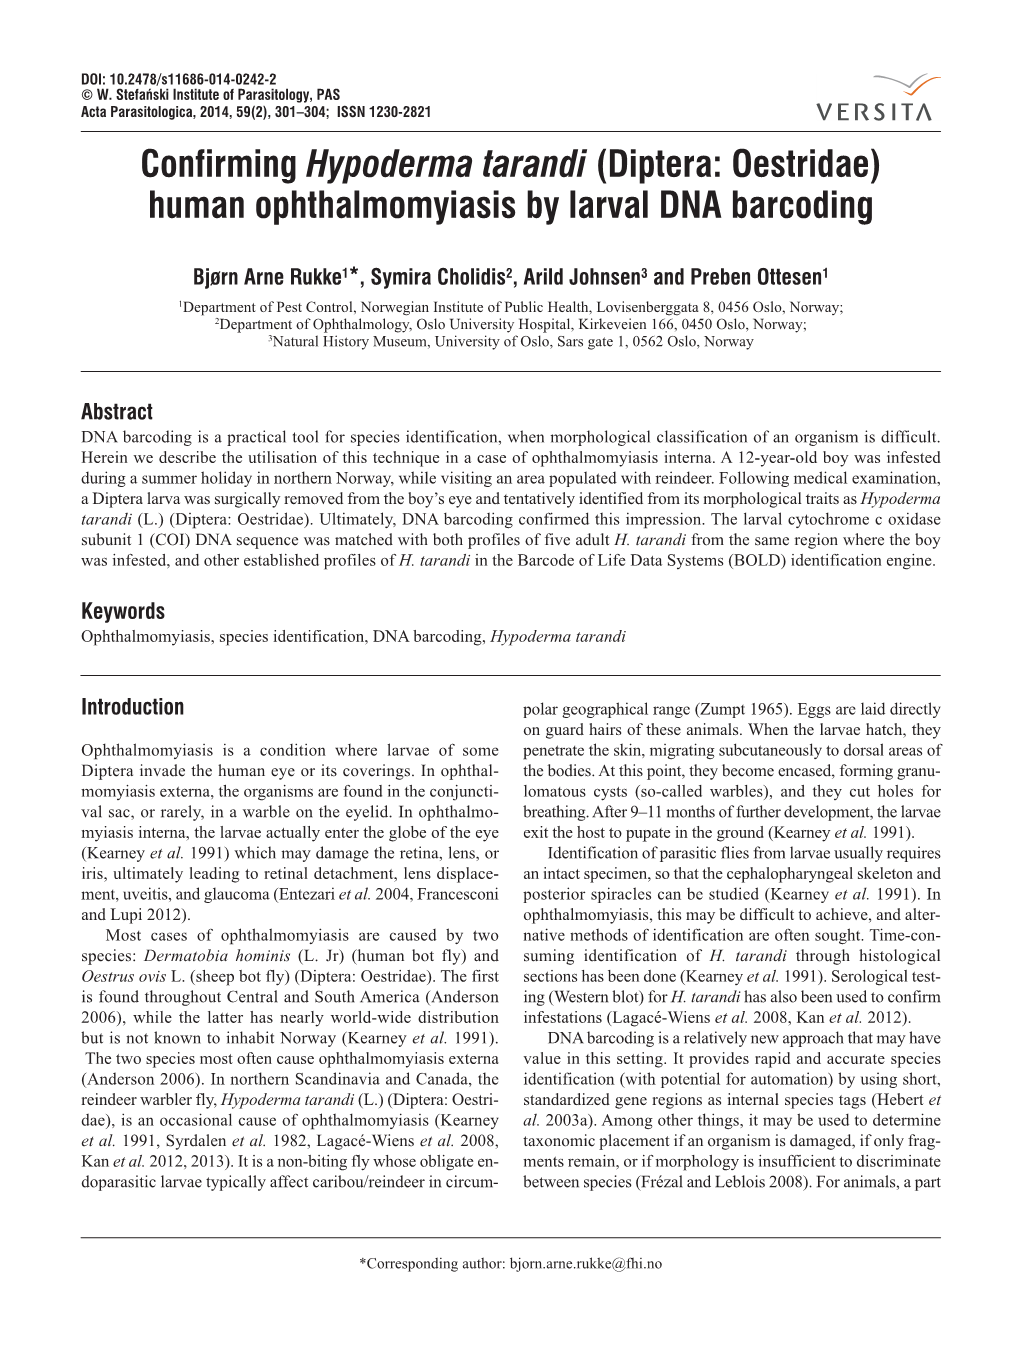 Diptera: Oestridae) Human Ophthalmomyiasis by Larval DNA Barcoding